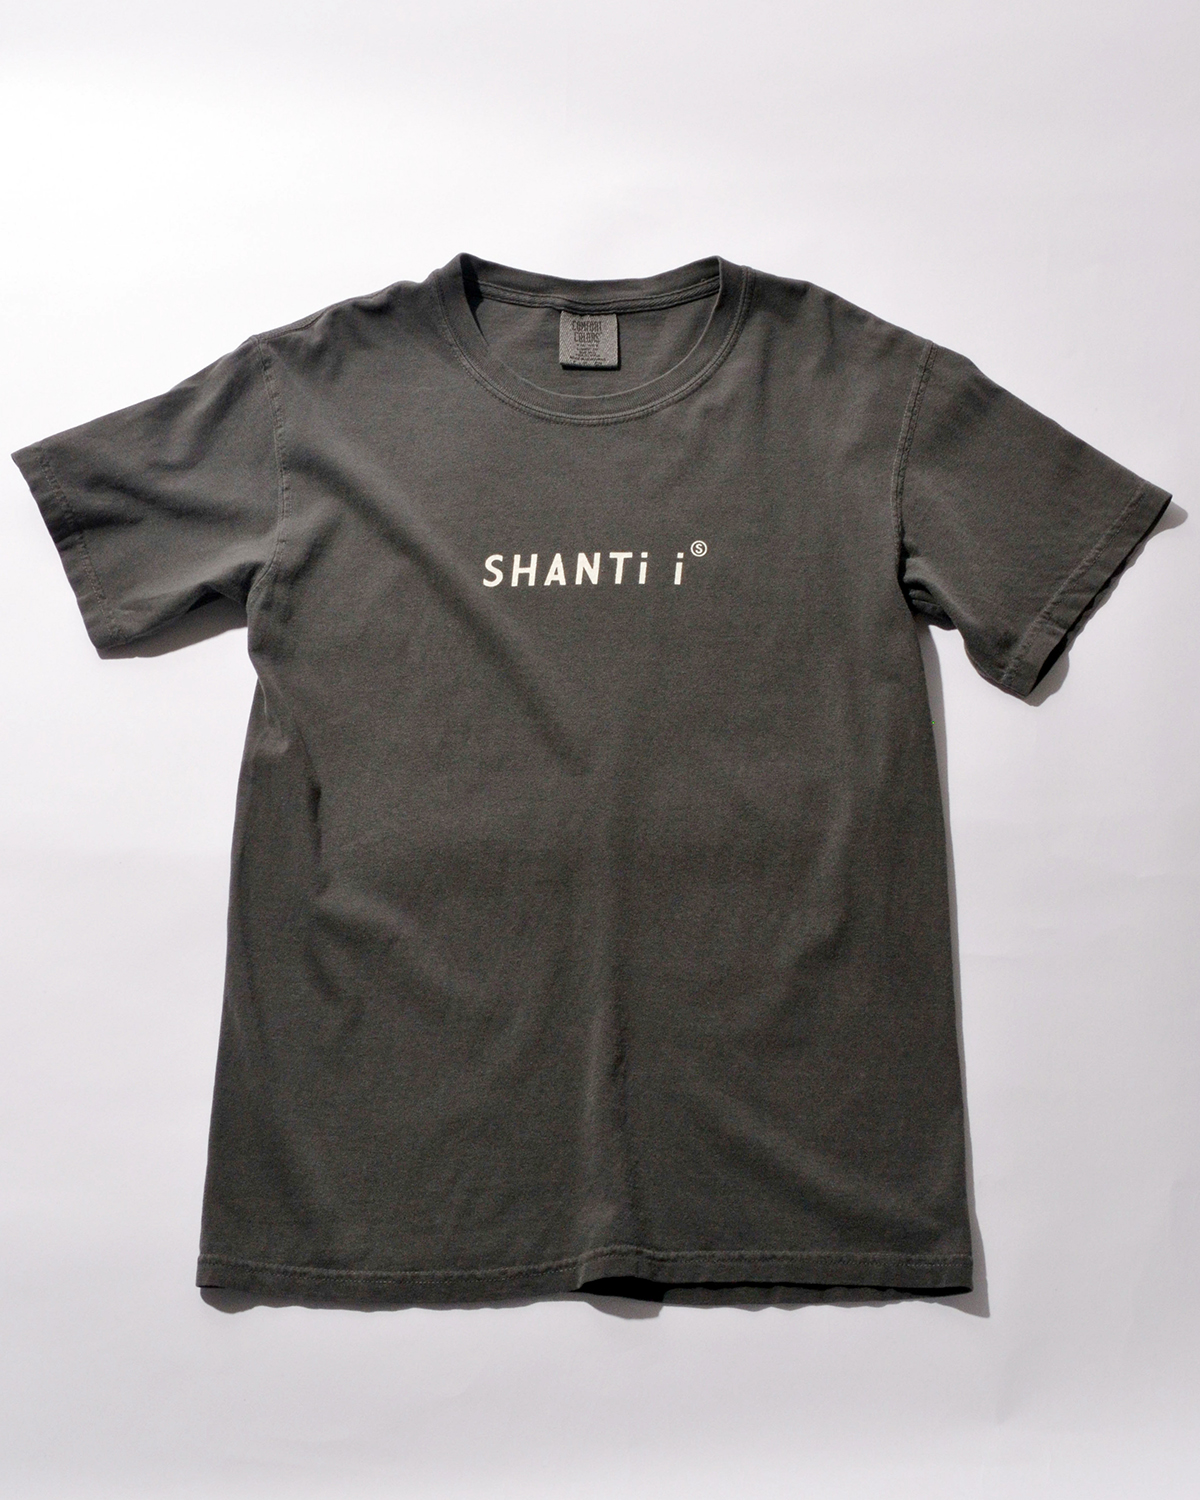 SHANTi i POP UP FUKUOKA 限定Tシャツ